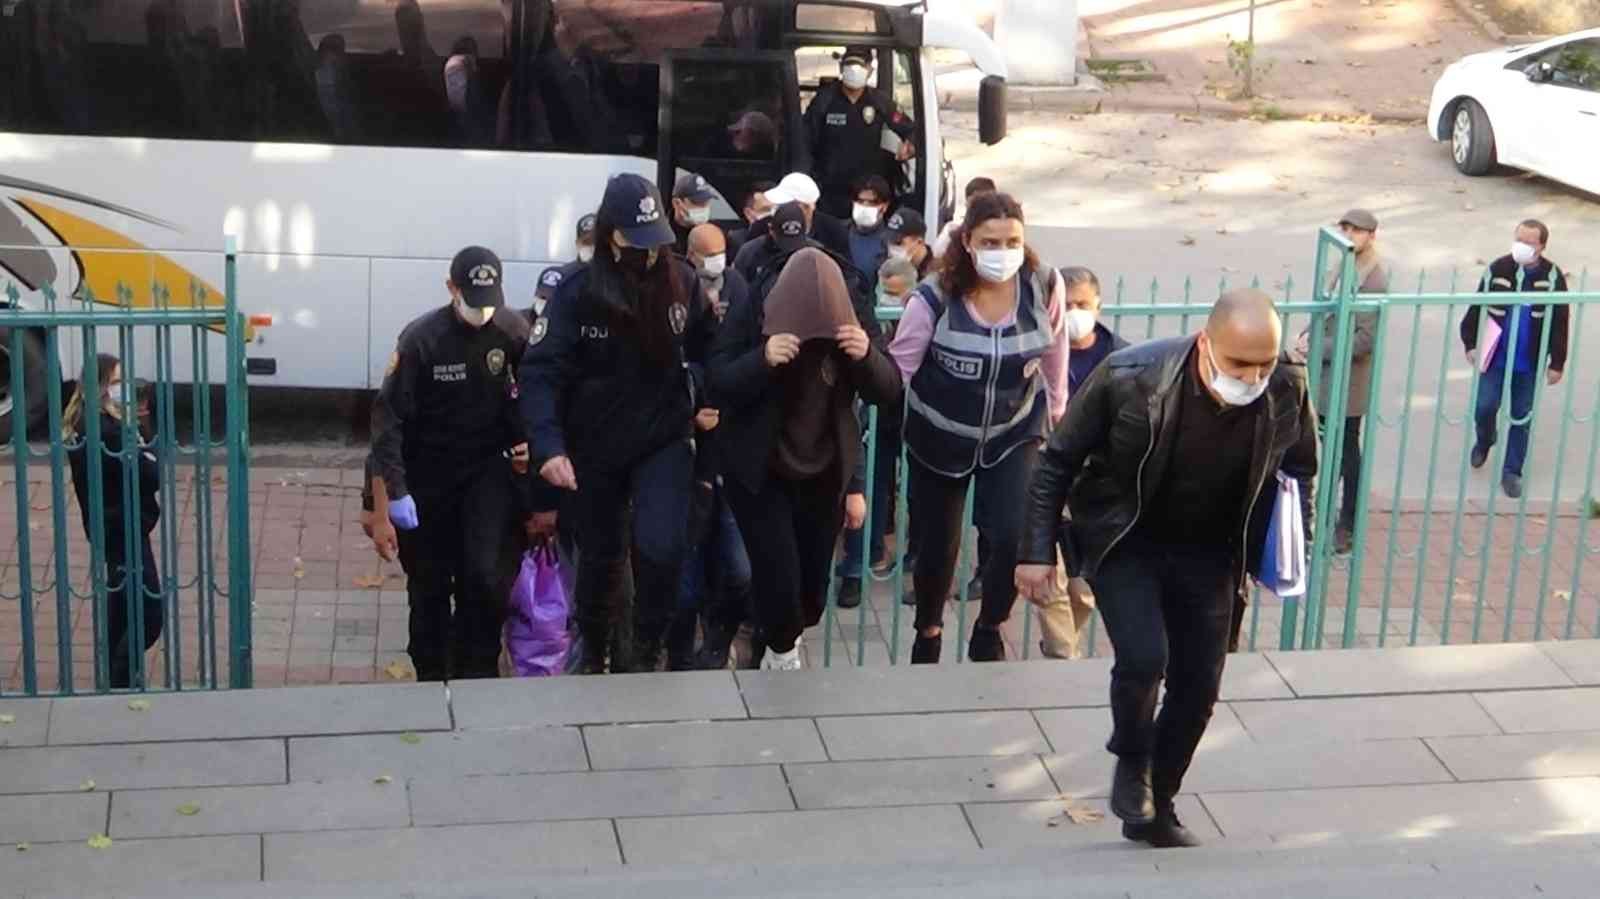 Kütahya polisinden silah kaçakçılarına büyük darbe #kutahya